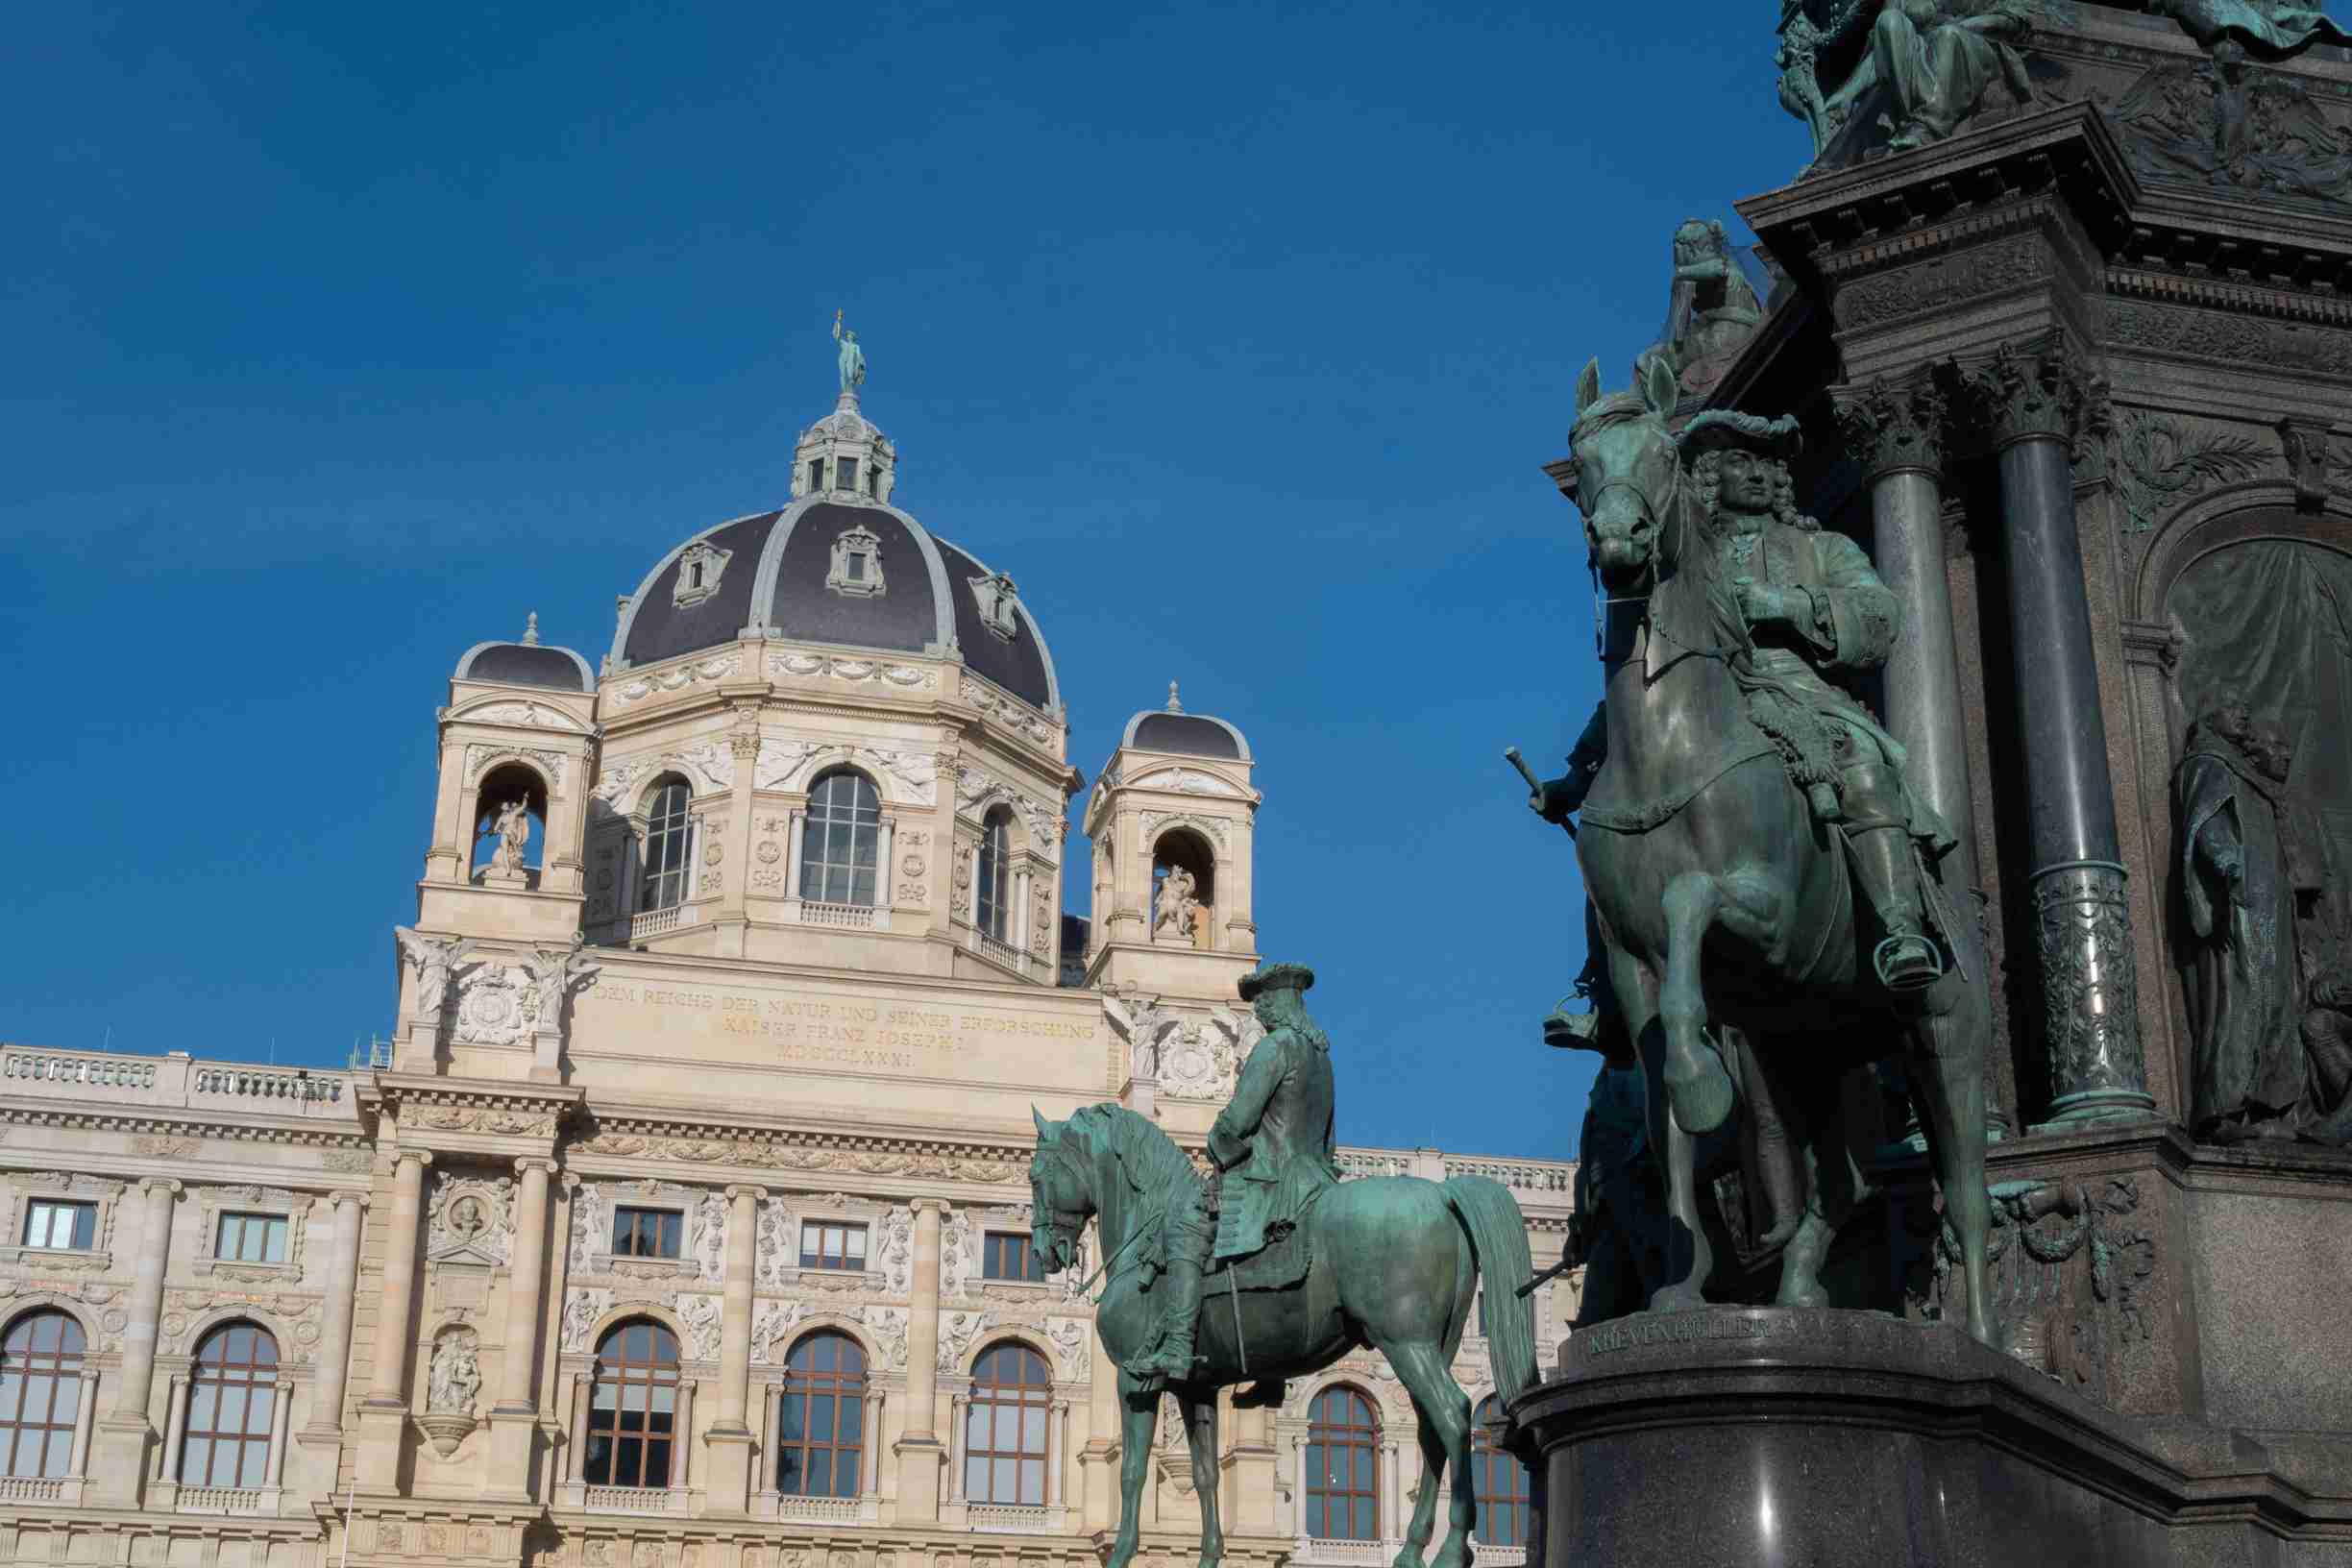 Vue sur le musée d'histoire naturelle de Vienne et la statue de Marie-Thérèse de Habsbourg